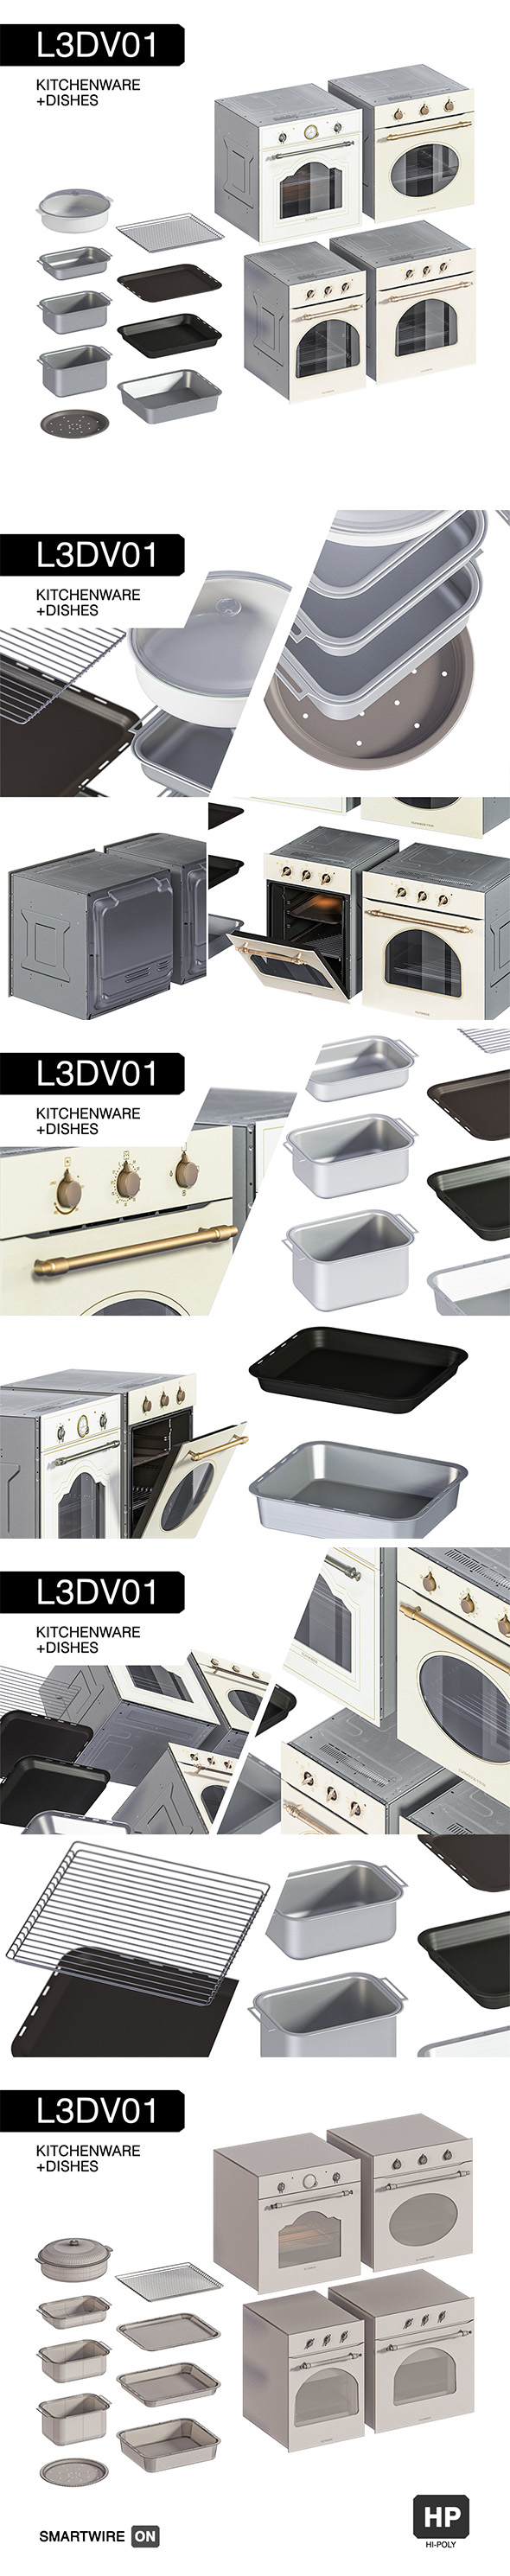 L3DV01G10 - kitchen - 3Docean 30603757